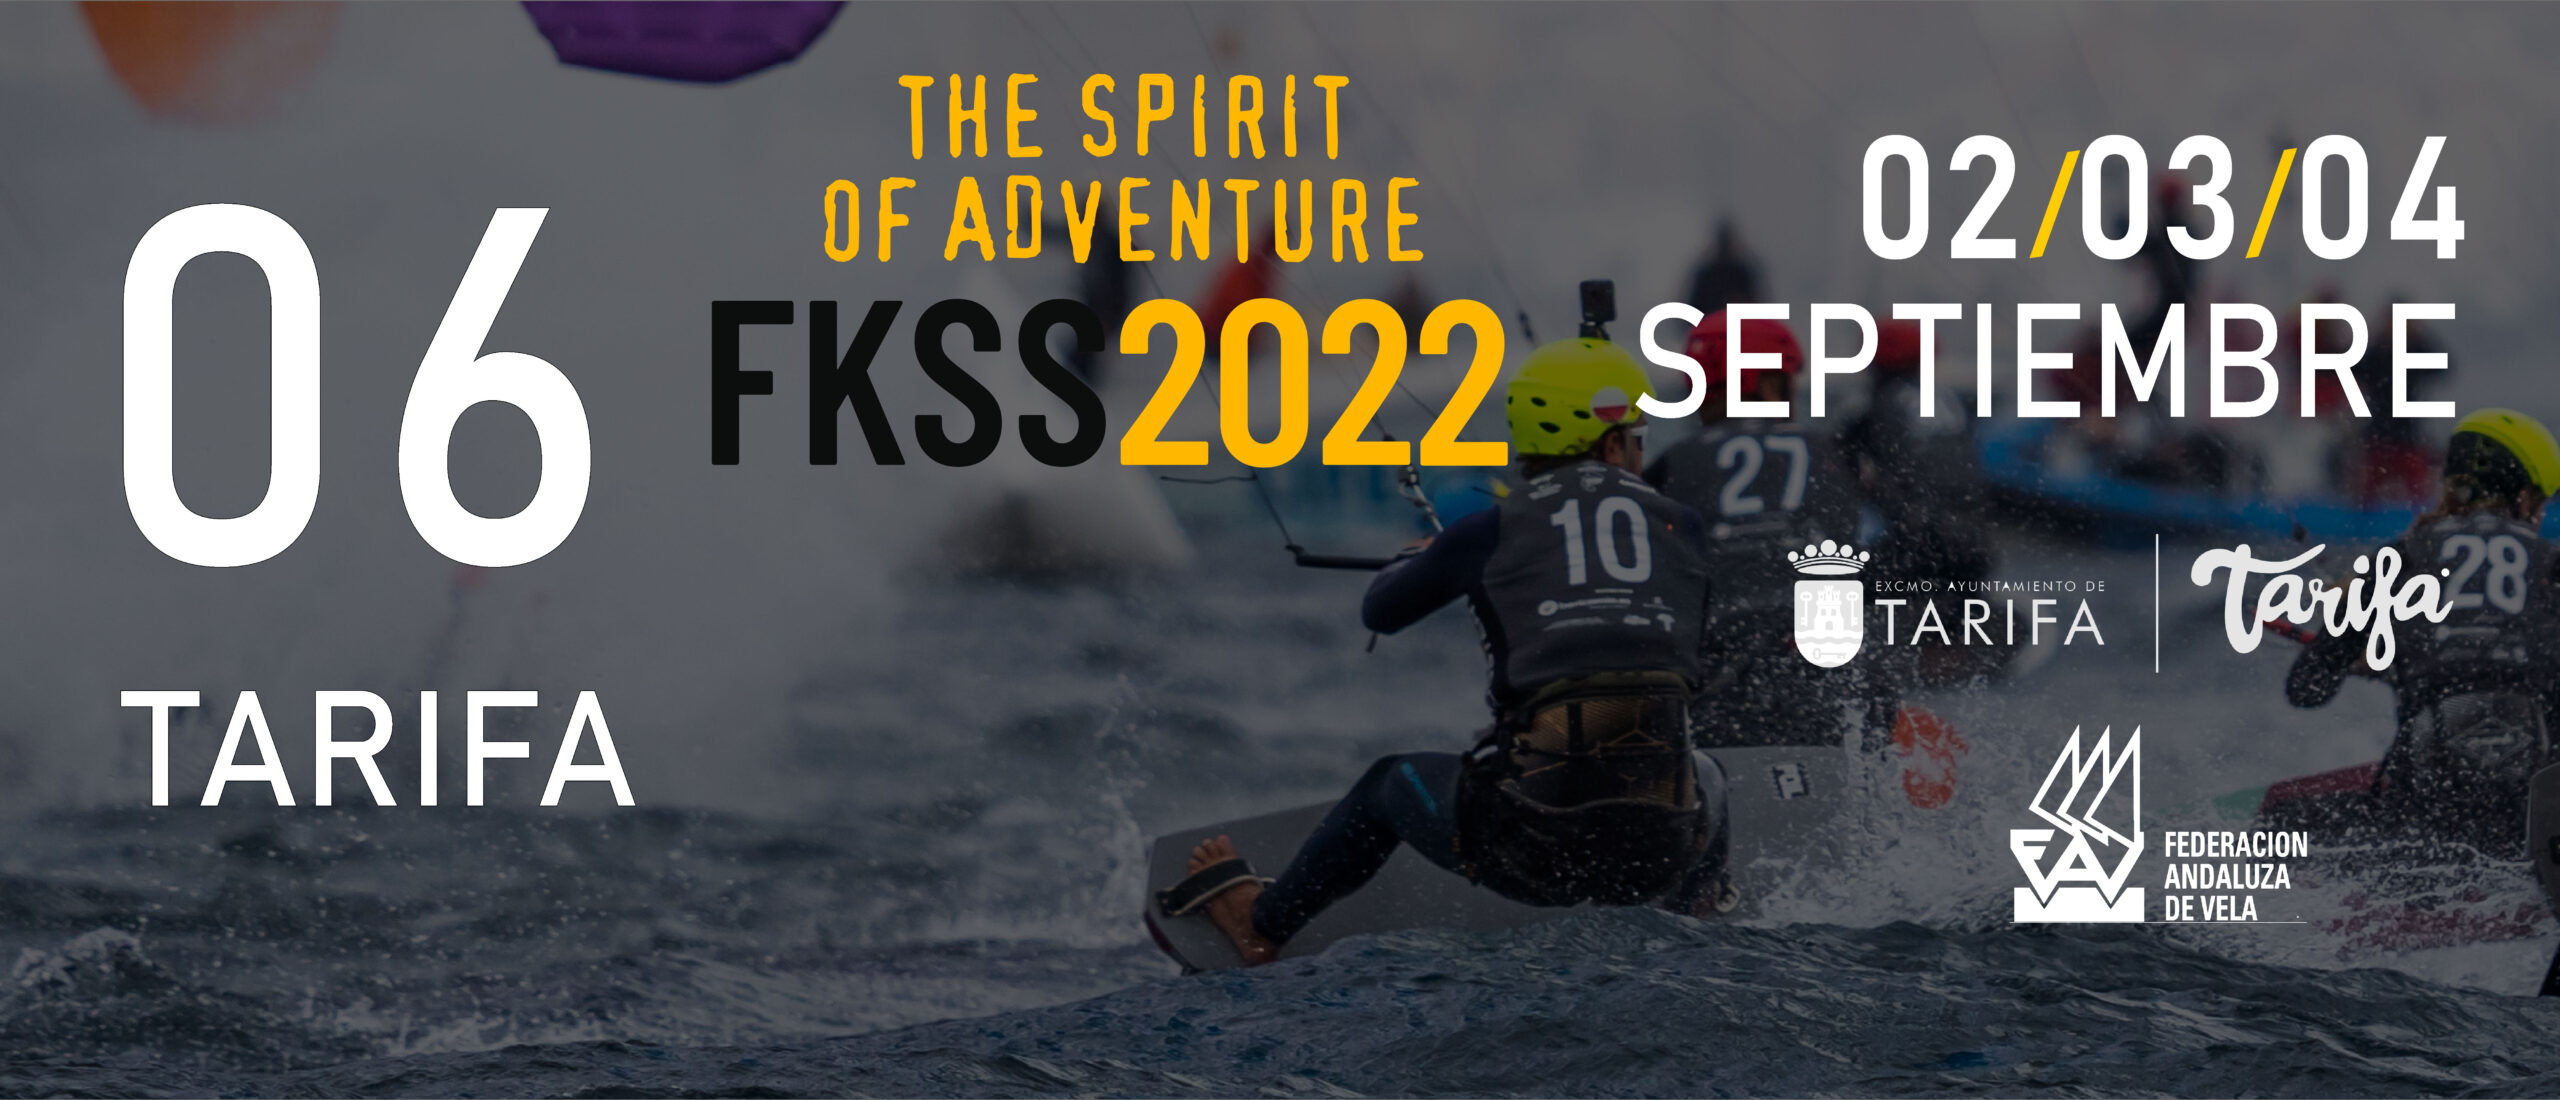 Banner FKSS 2022 Tarifa